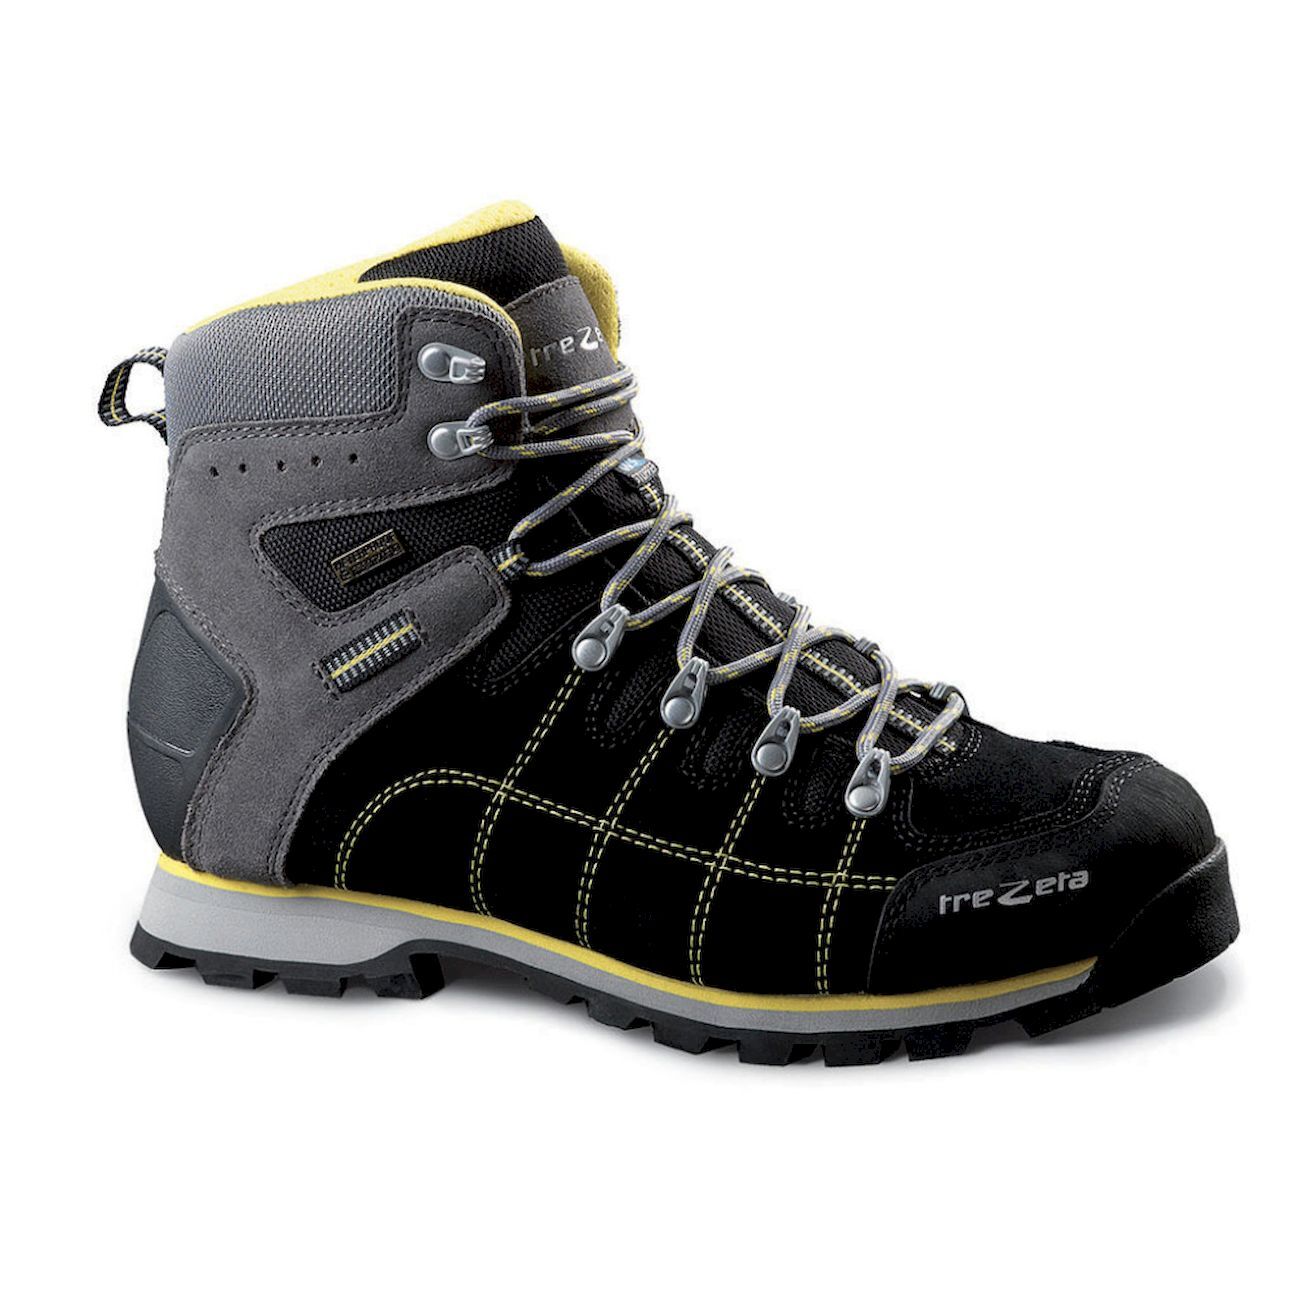 Trezeta Hurricane Evo WP - Trekking boots - Men's